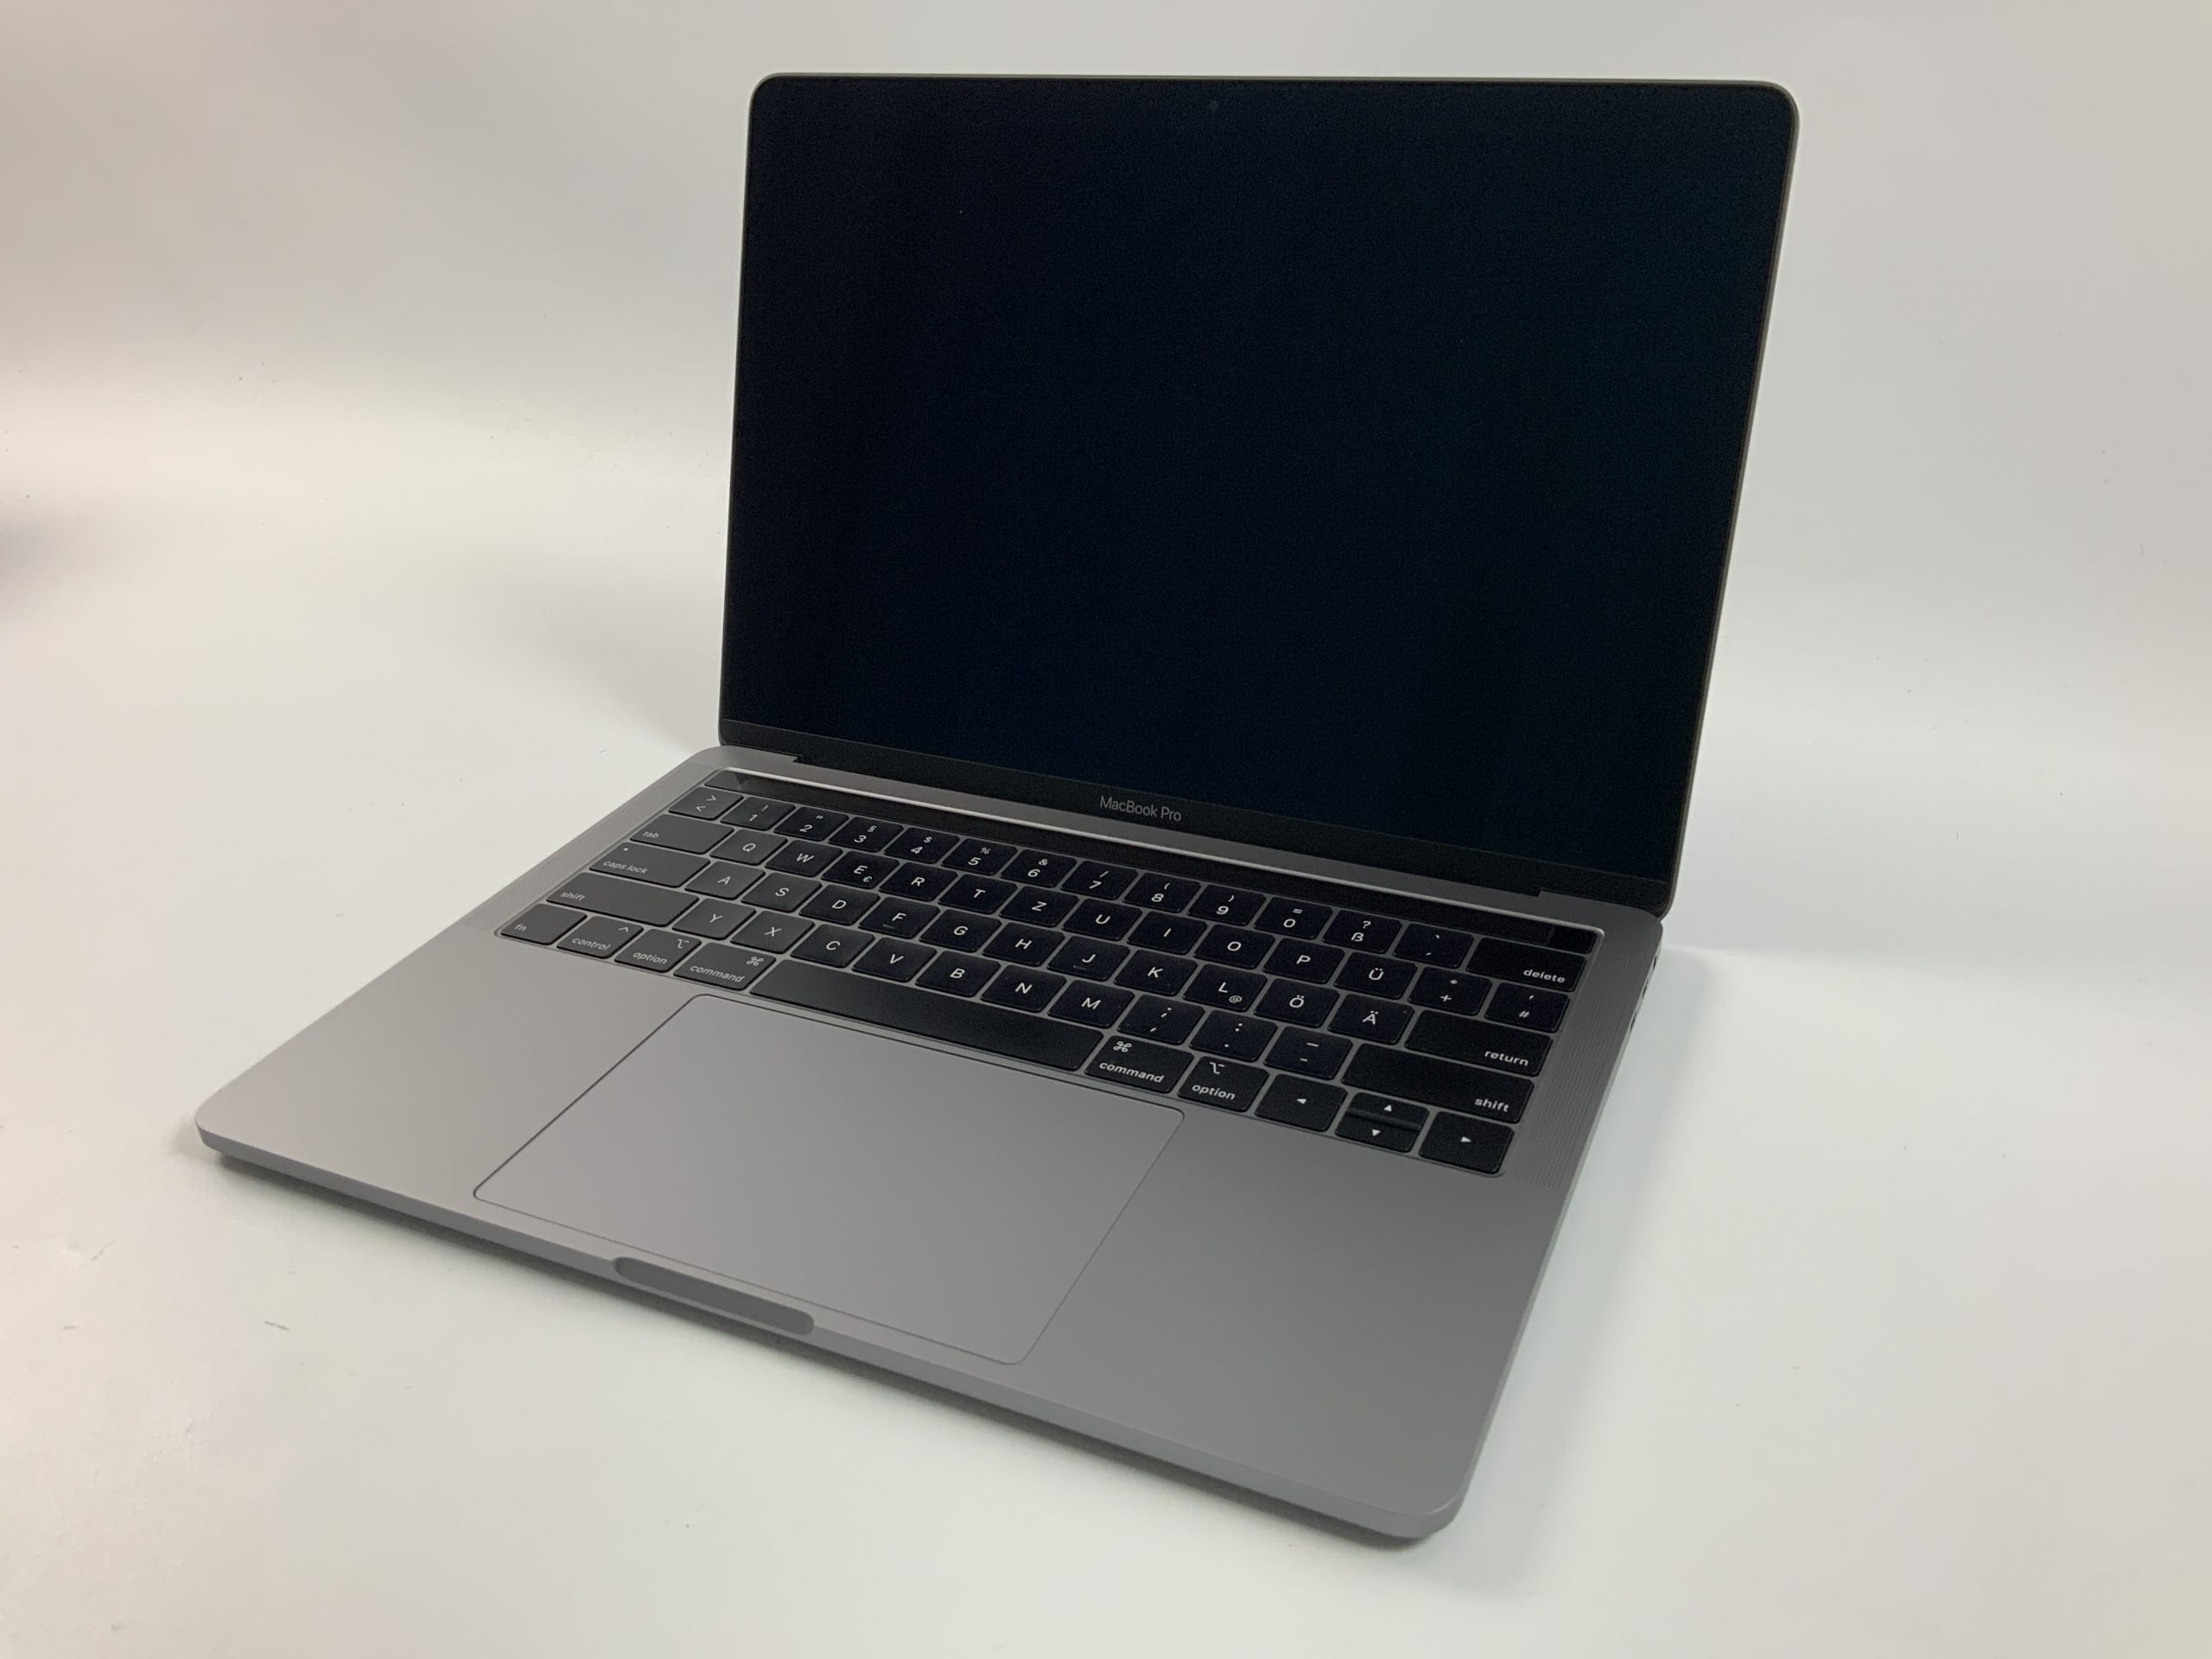 MacBook Pro 13" 4TBT Mid 2018 (Intel Quad-Core i7 2.7 GHz 16 GB RAM 1 TB SSD), Space Gray, Intel Quad-Core i7 2.7 GHz, 16 GB RAM, 1 TB SSD, immagine 1